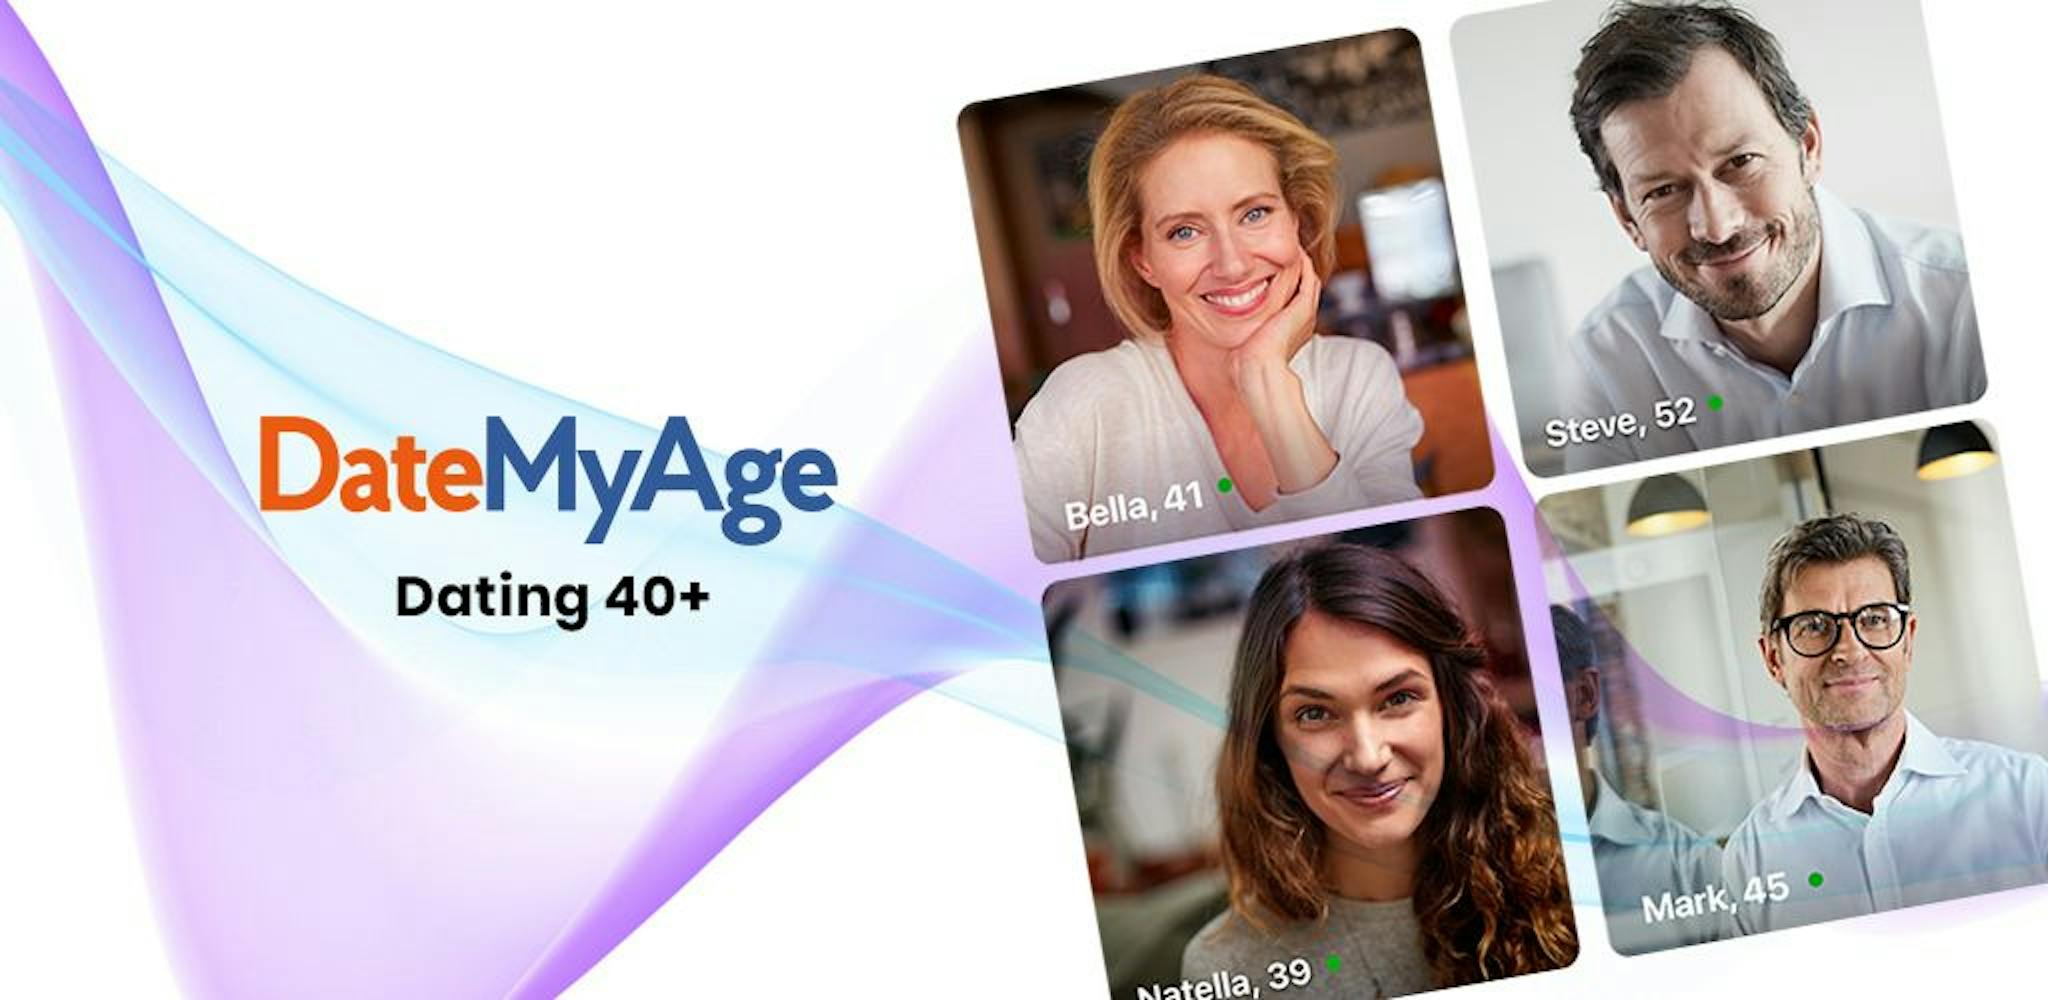 DateMyAge - một ứng dụng hẹn hò thích hợp của Social Discovery Group dành cho các cá nhân trên 40 tuổi